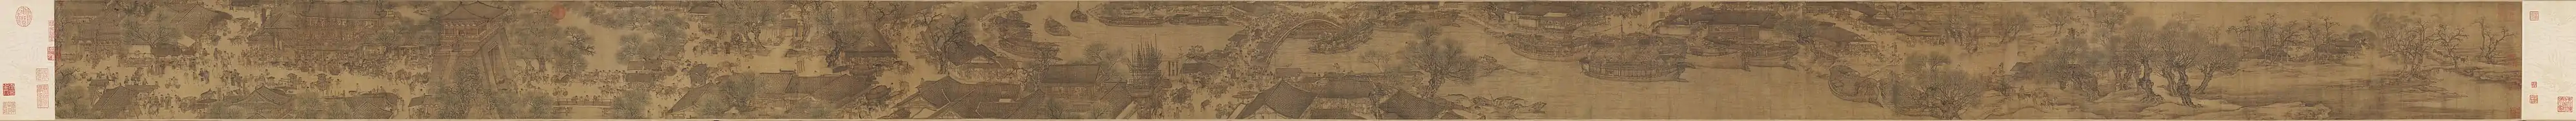 Animation au bord de la rivière [de la capitale] durant la fête Qingming. Peintre de l'Académie Hanlin, début XIe siècle, encre et couleurs sur soie, 24 × 528 cm. Musée du Palais, Pékin.